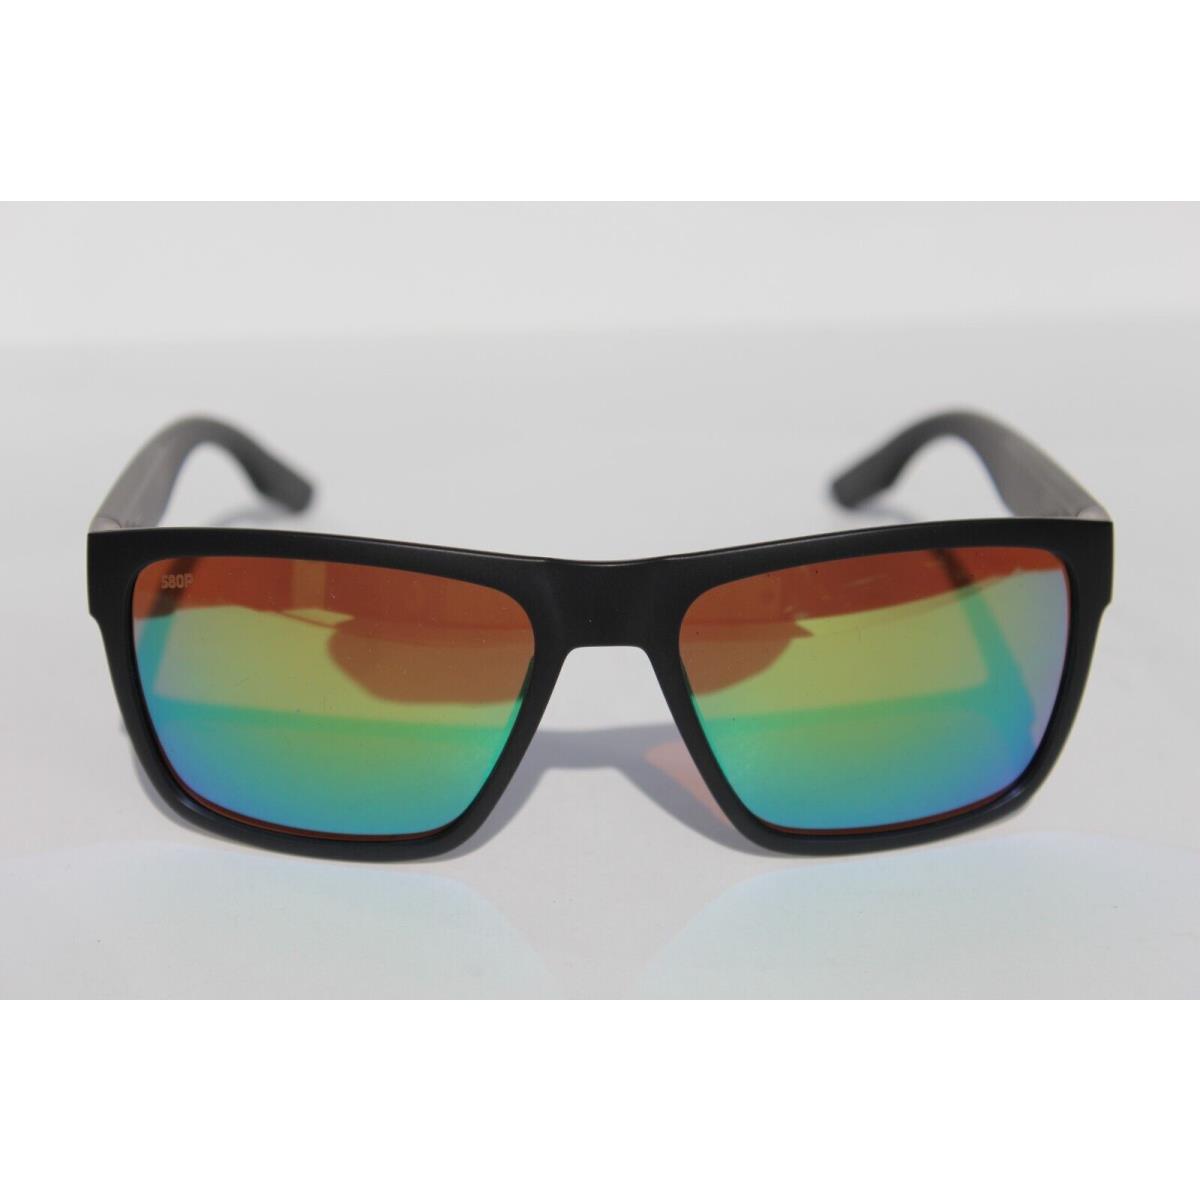 Costa Del Mar sunglasses  - Black Frame, Green Lens